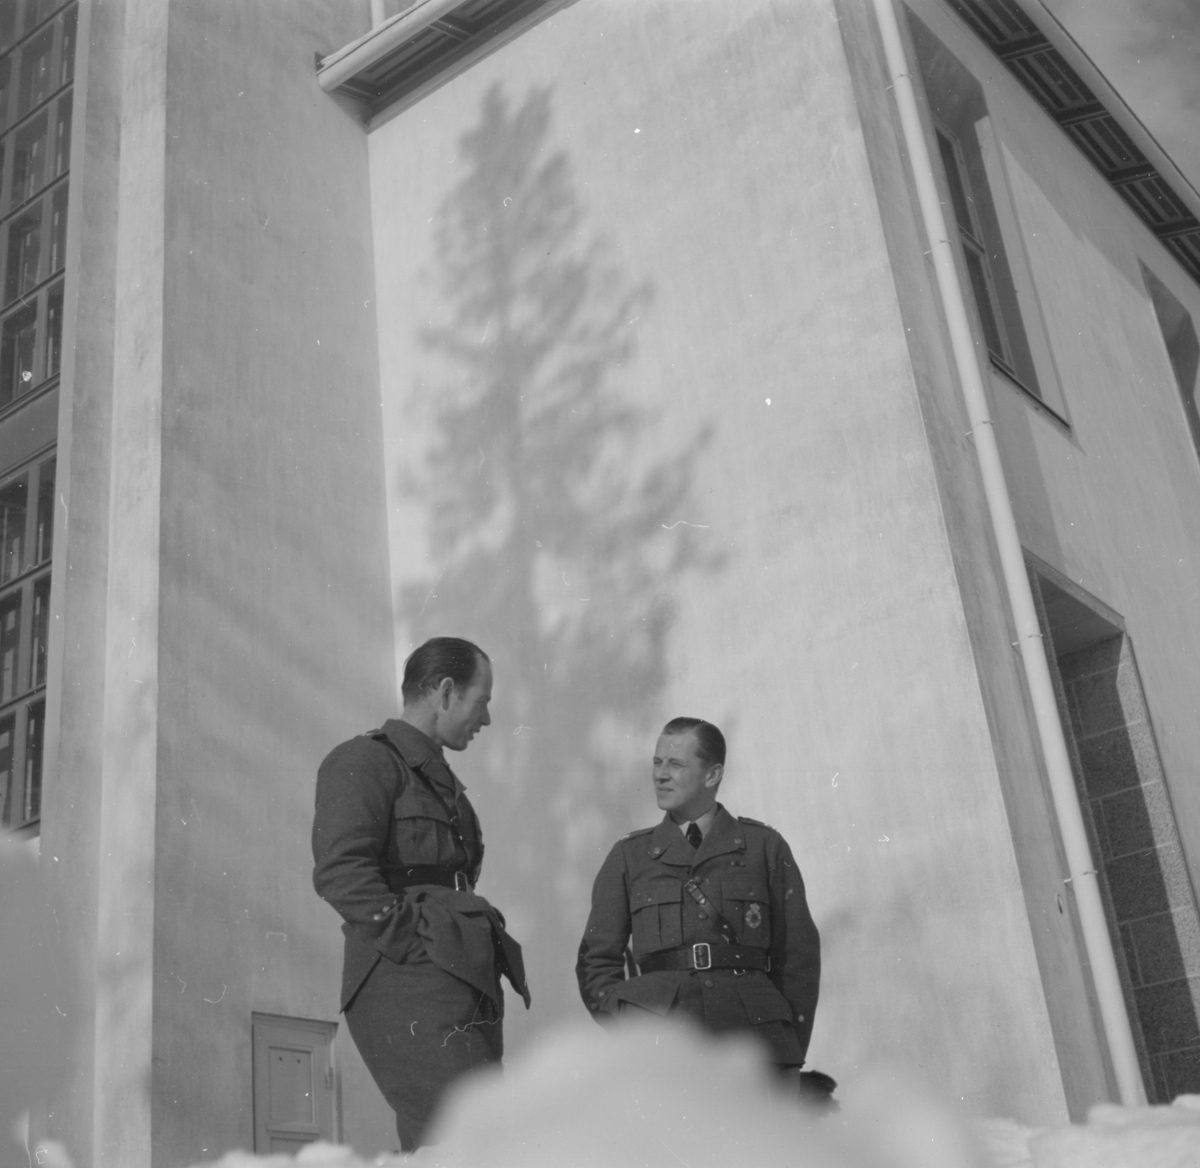 Två militärer tillhörande Svenska frivilligflottiljen i Finland, F 19, samtalar vid en byggnad. Snödriva i förgrunden.